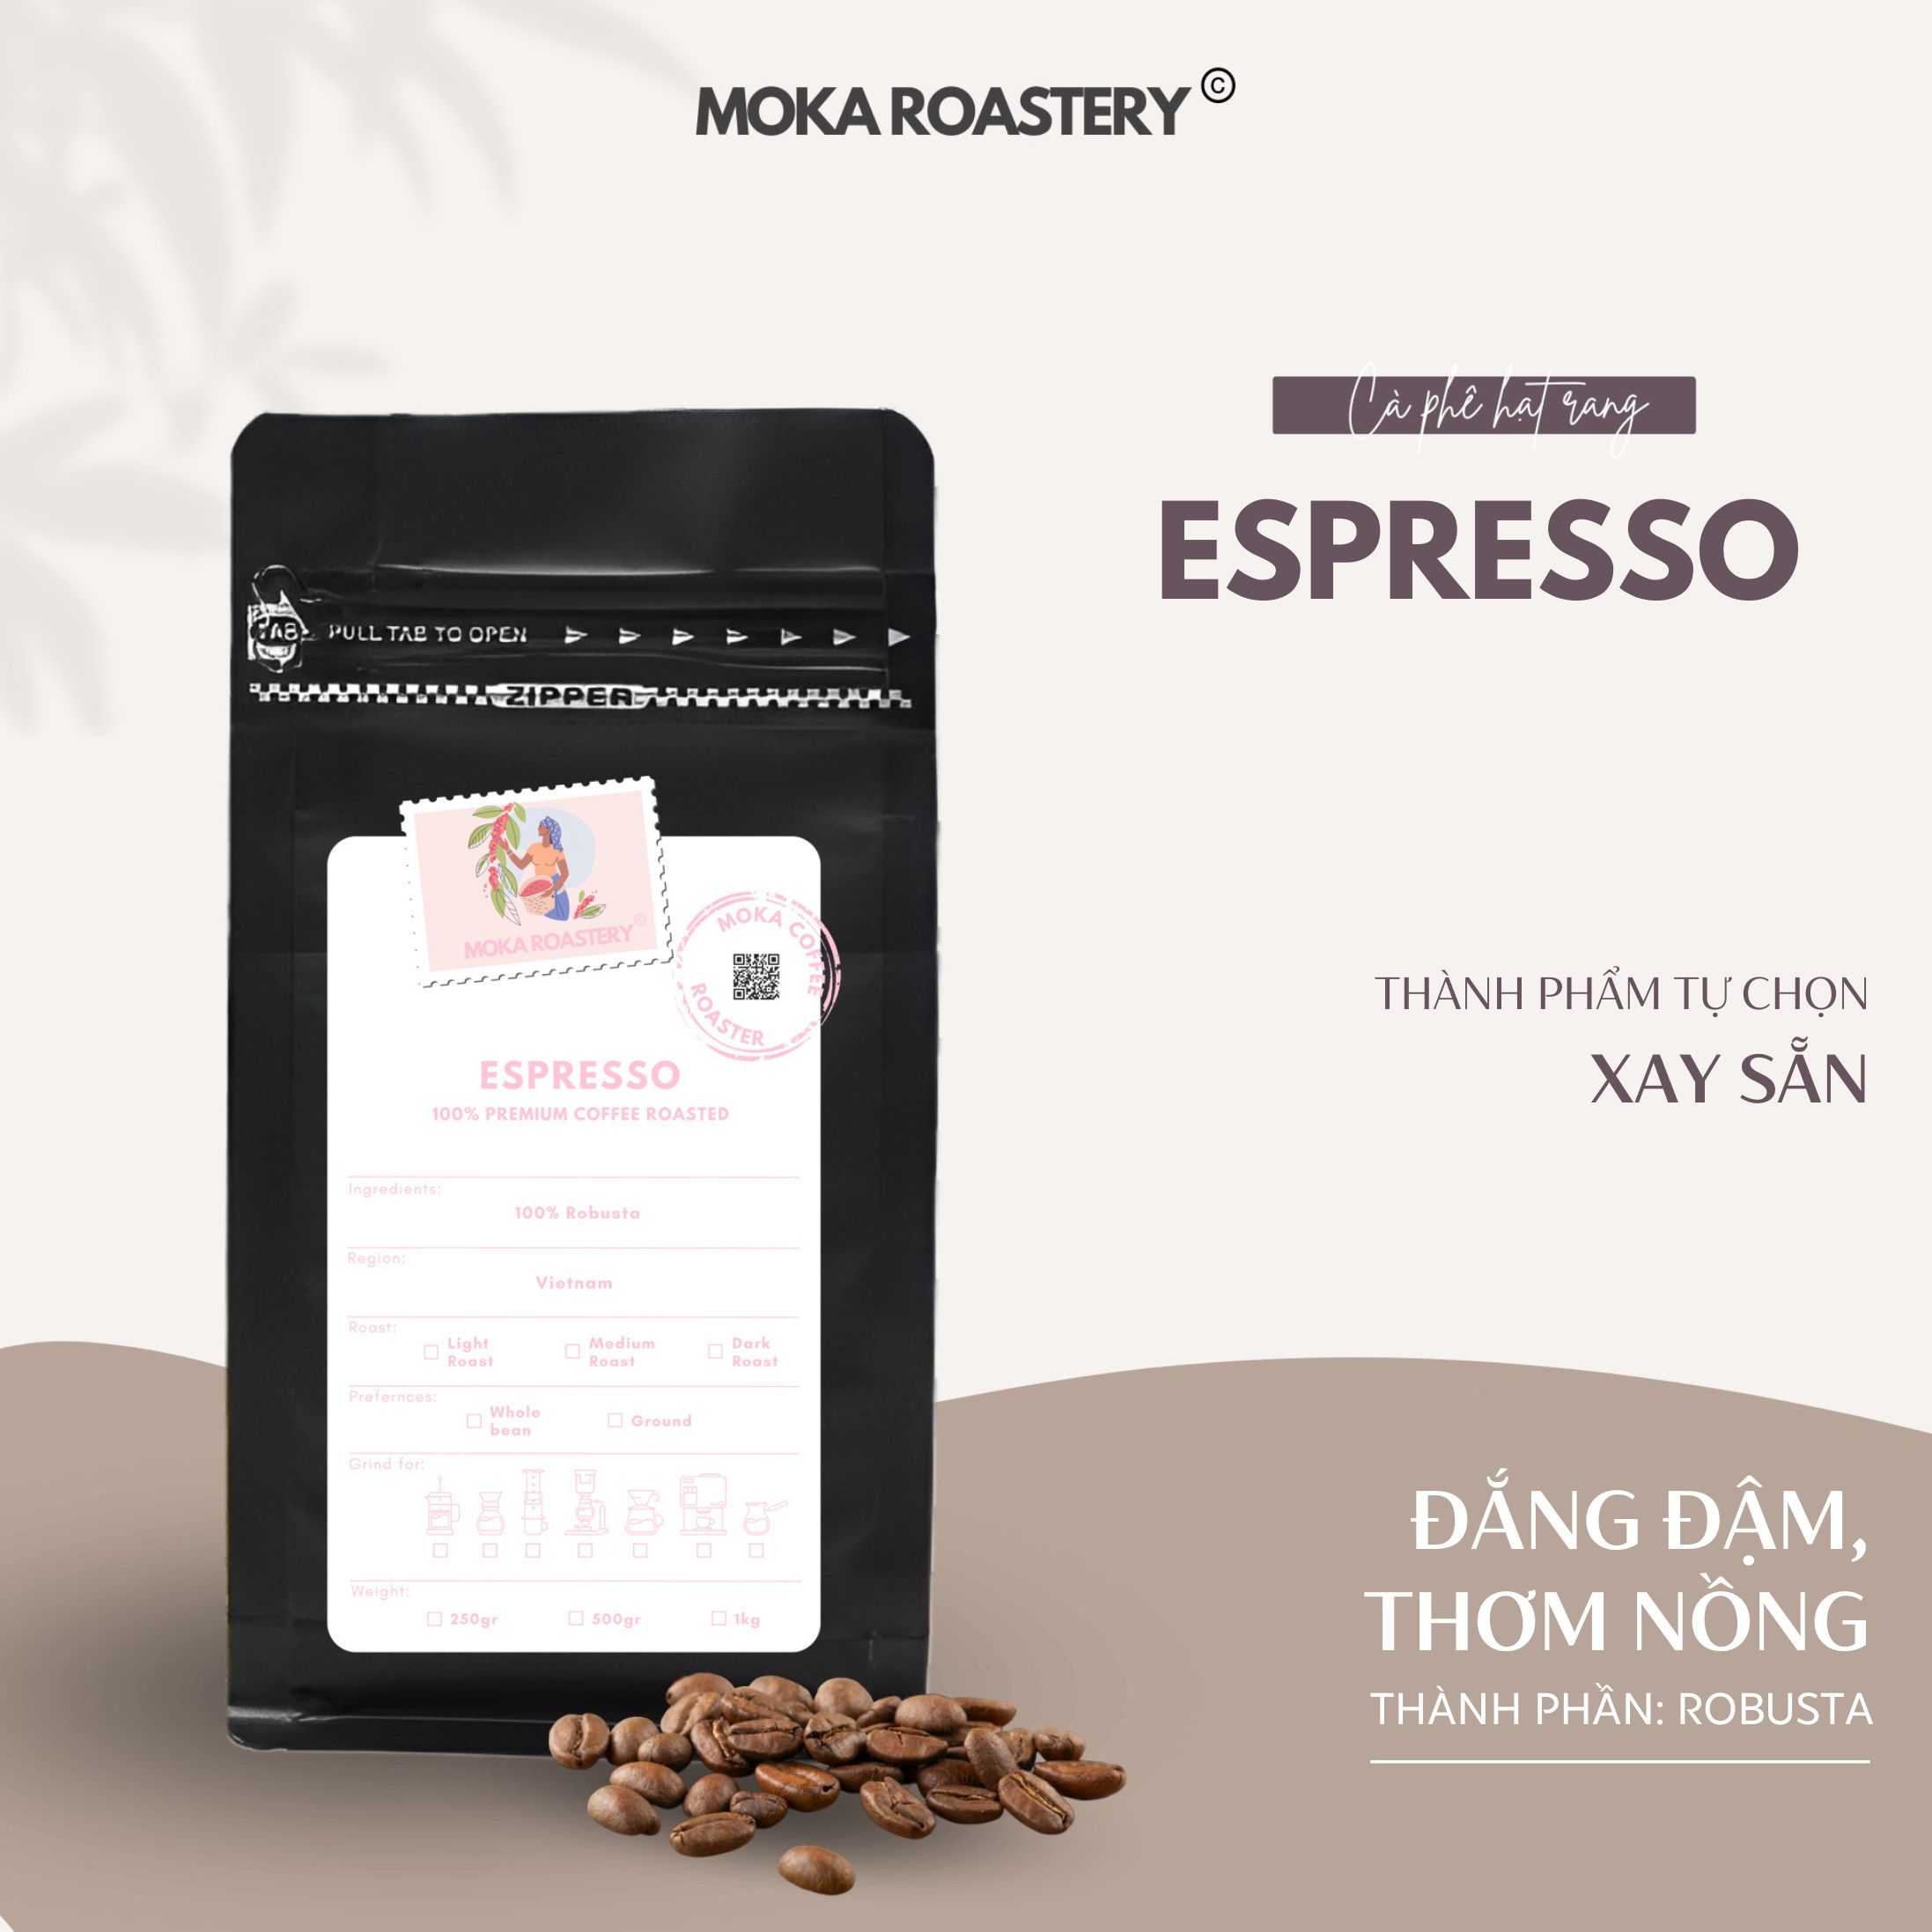 Cà Phê Espresso Moka Cafe, Cà Phê Hạt Rang Xay Nguyên Chất Pha Máy Chọn